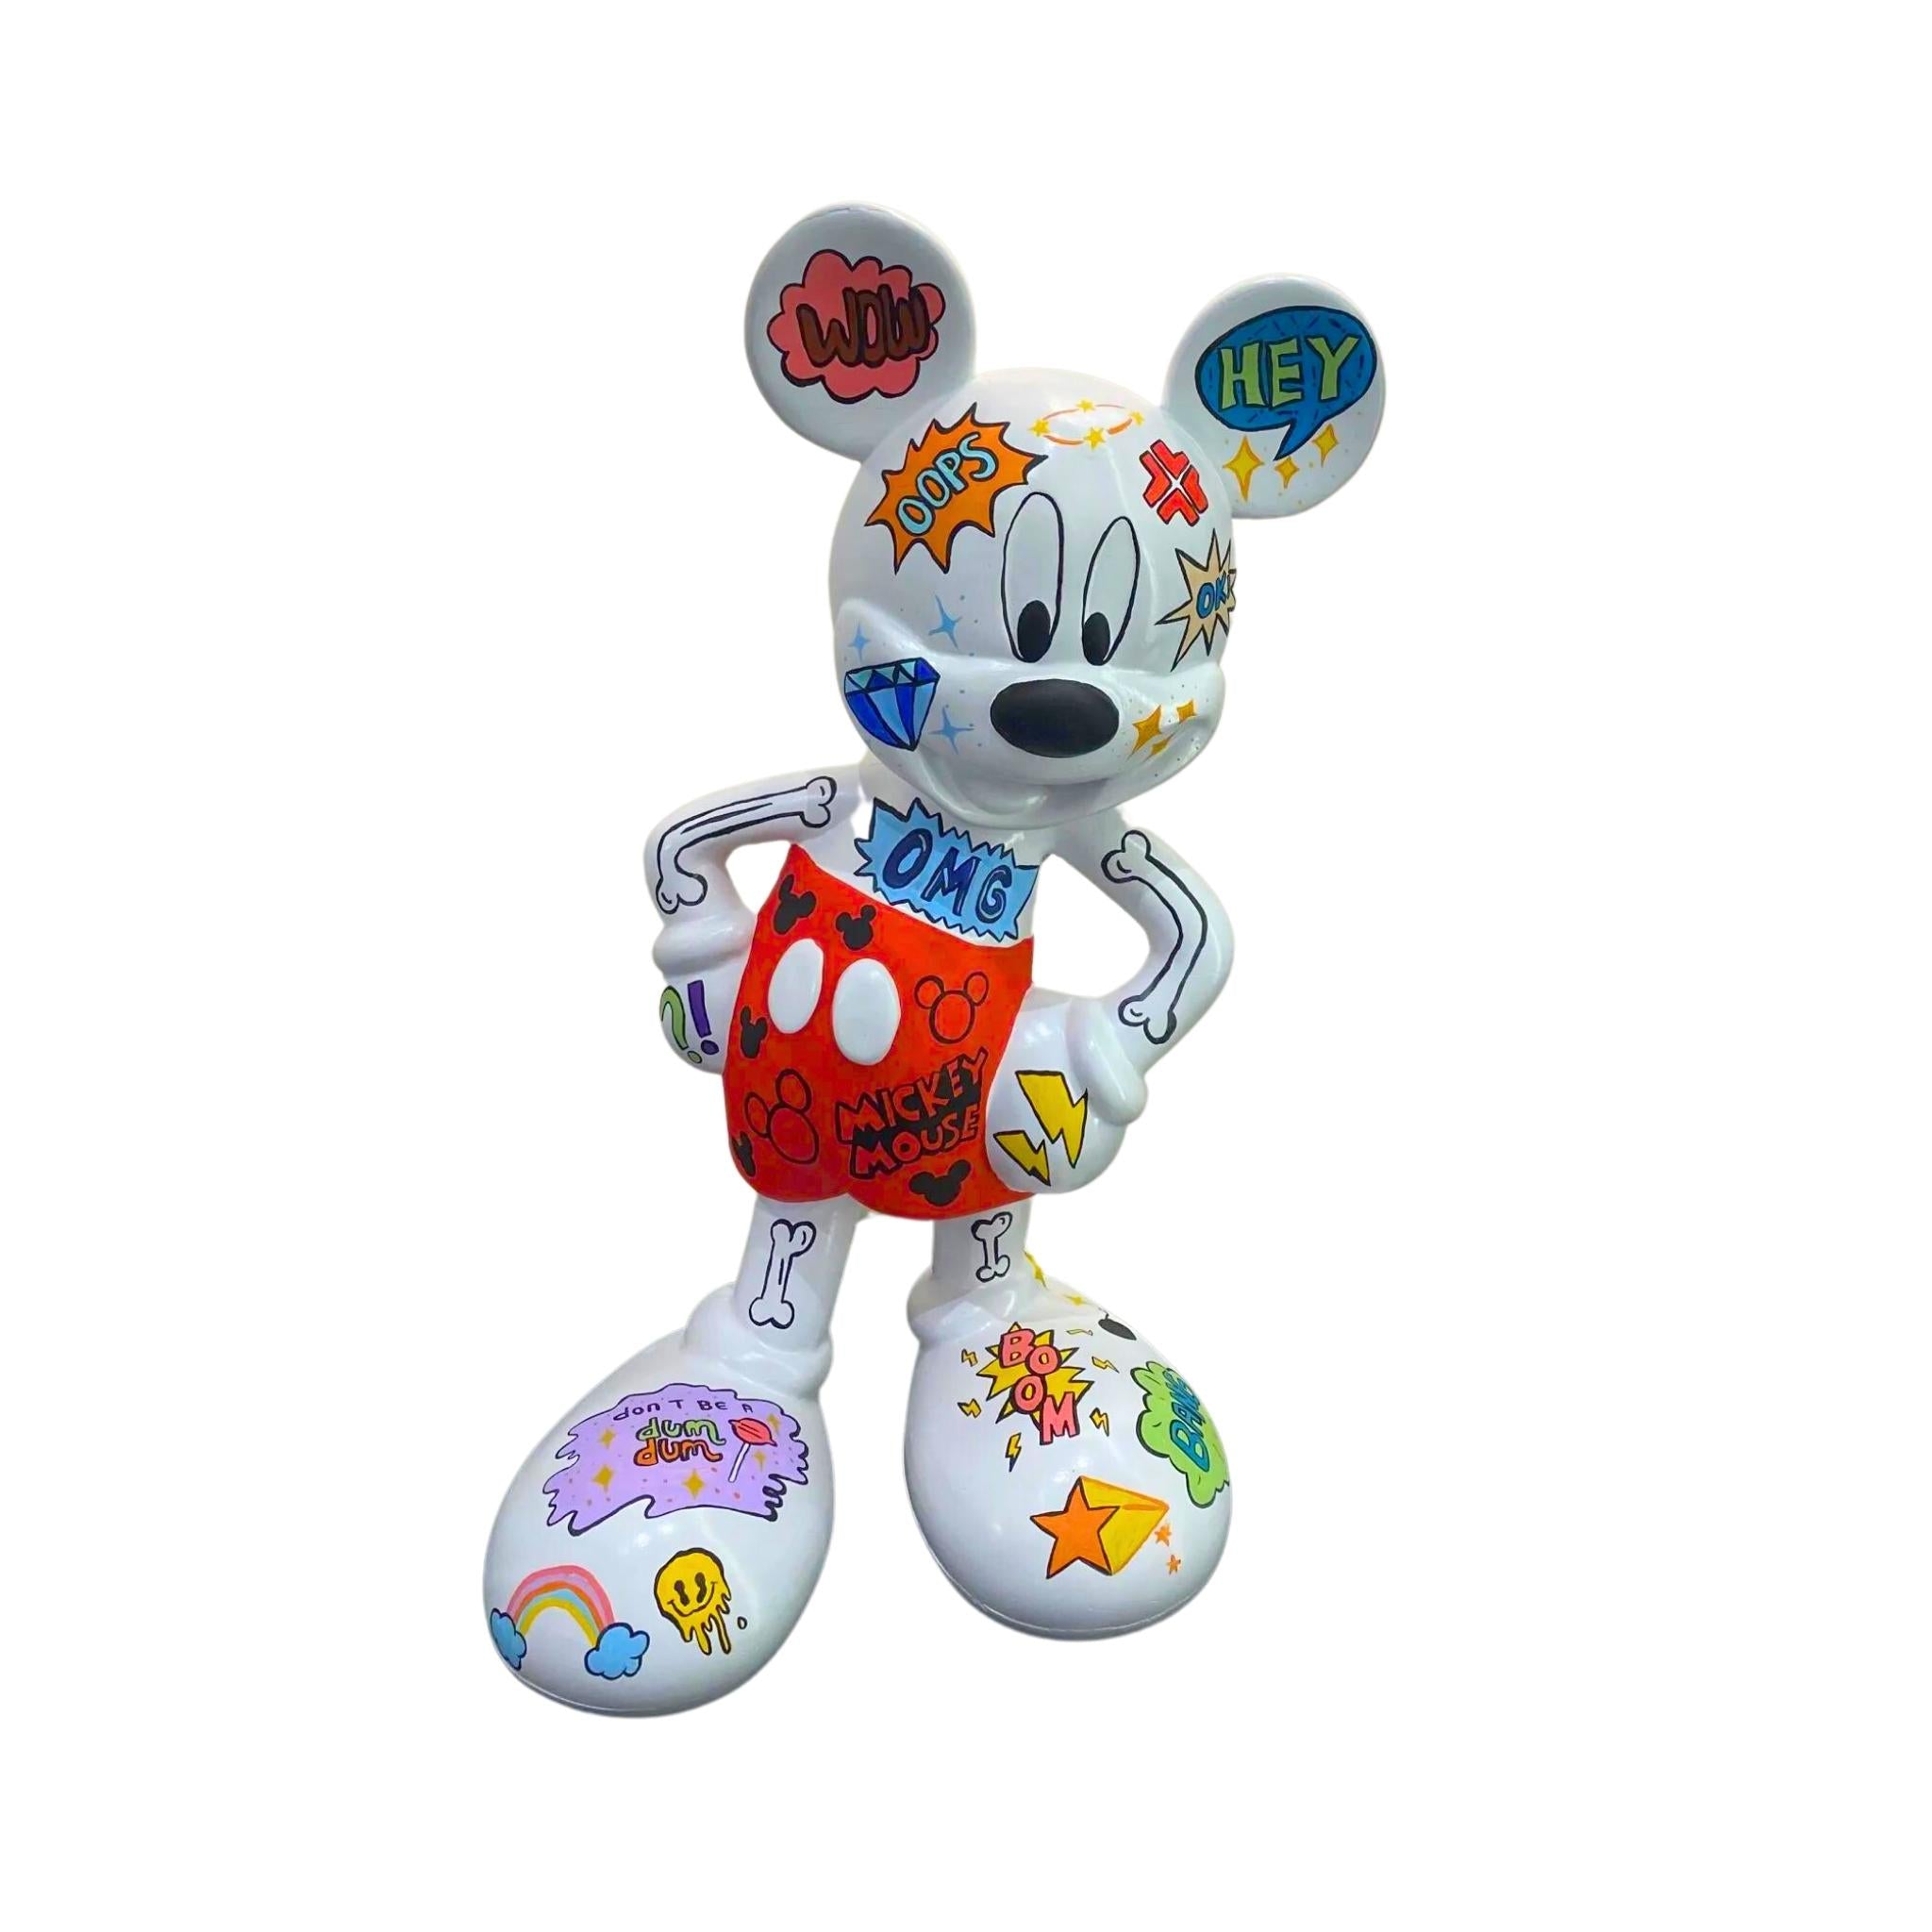 Pop Art Mickey: A Limited Edition Celebration